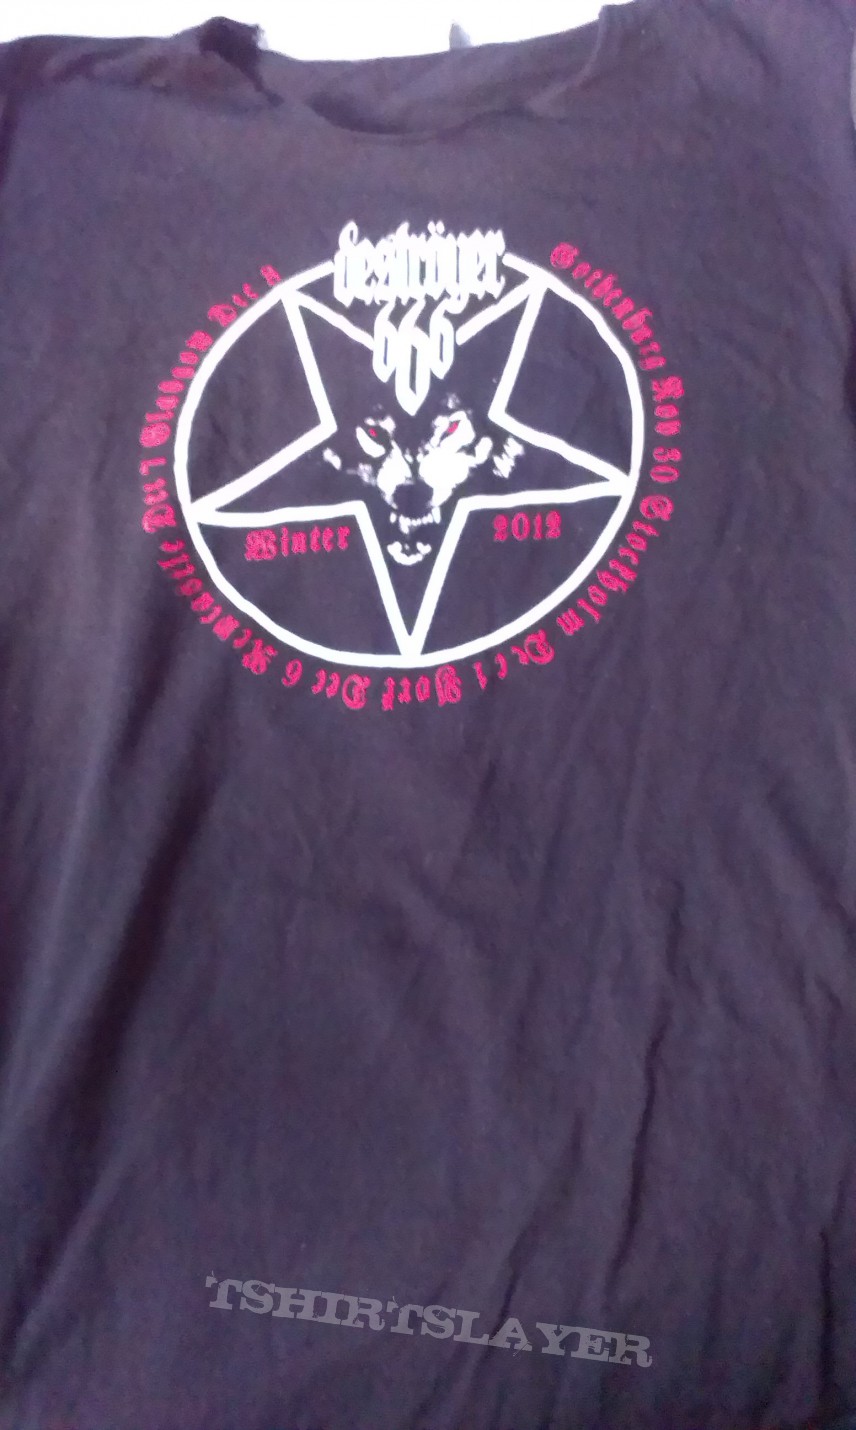 Deströyer 666 Winter 2012 tour T-shirt